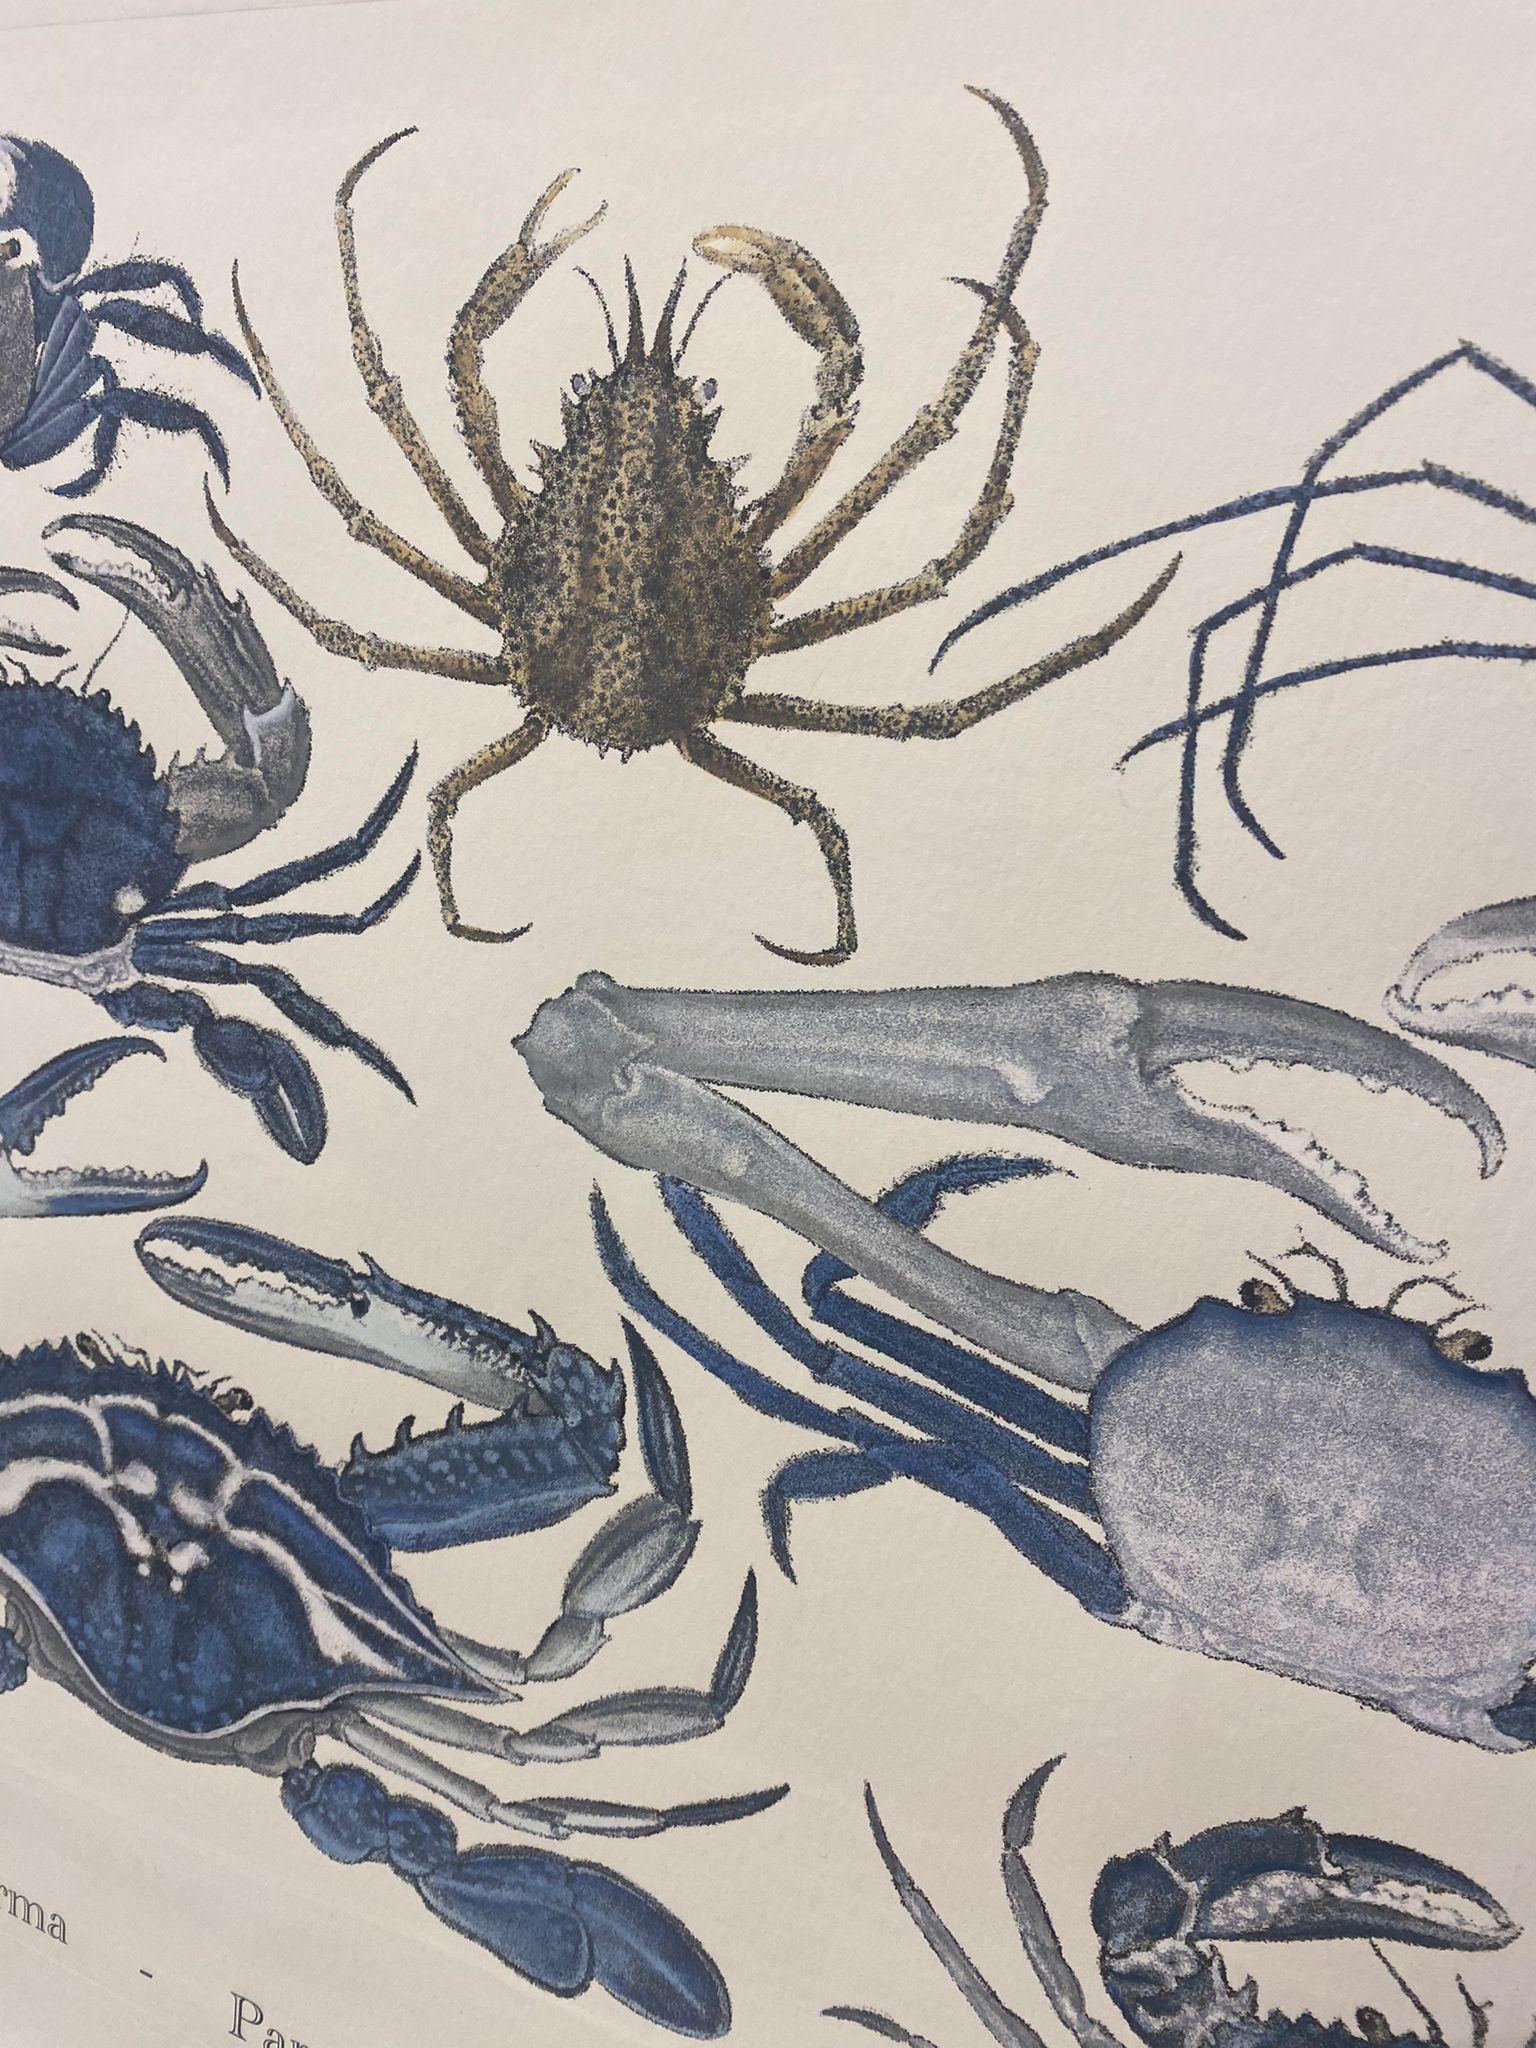 Eleganter handaquarellierter Druck, der Krabben darstellt, aus der Serie Japanese Sea Life
Dieser Druck im Marinestil ist in 6 verschiedenen natürlichen Darstellungen erhältlich, um eine helle und fröhliche Komposition zu schaffen:
- Quallen
-